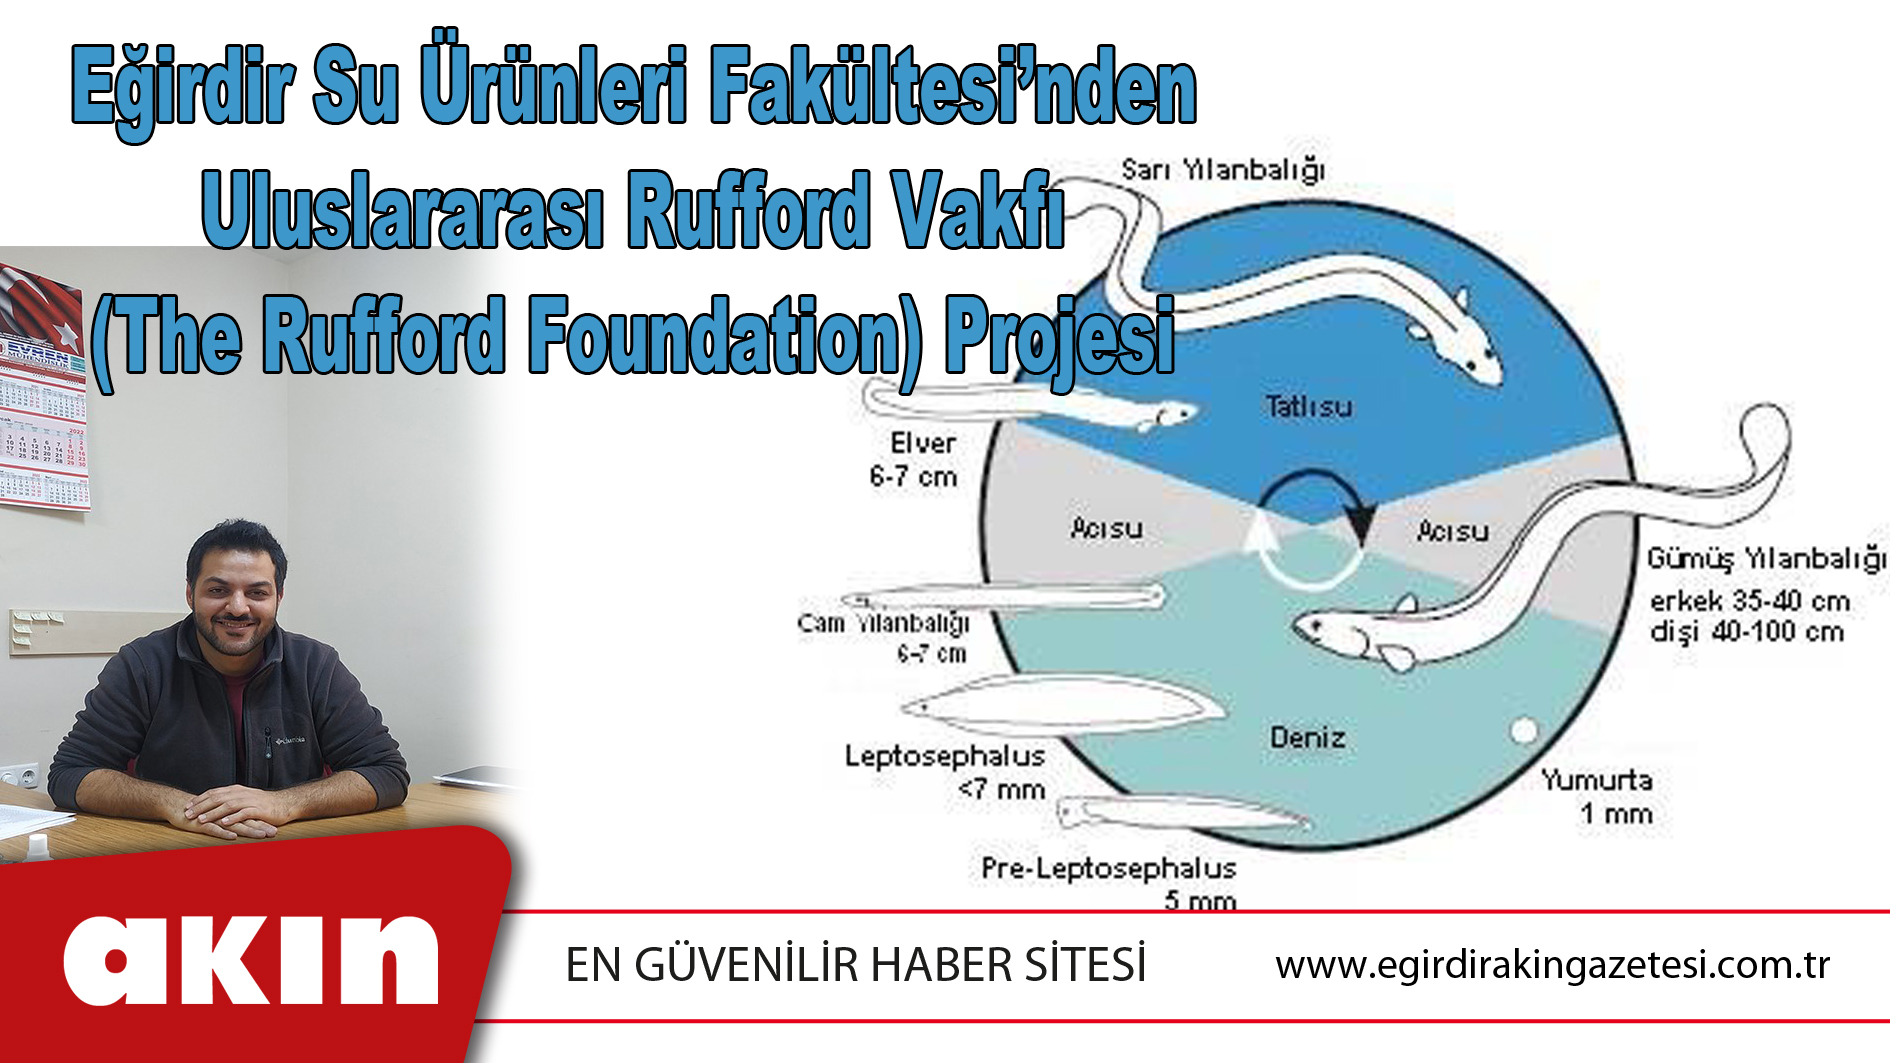 Eğirdir Su Ürünleri Fakültesi’nden Uluslararası Rufford Vakfı (The Rufford Foundation) Projesi